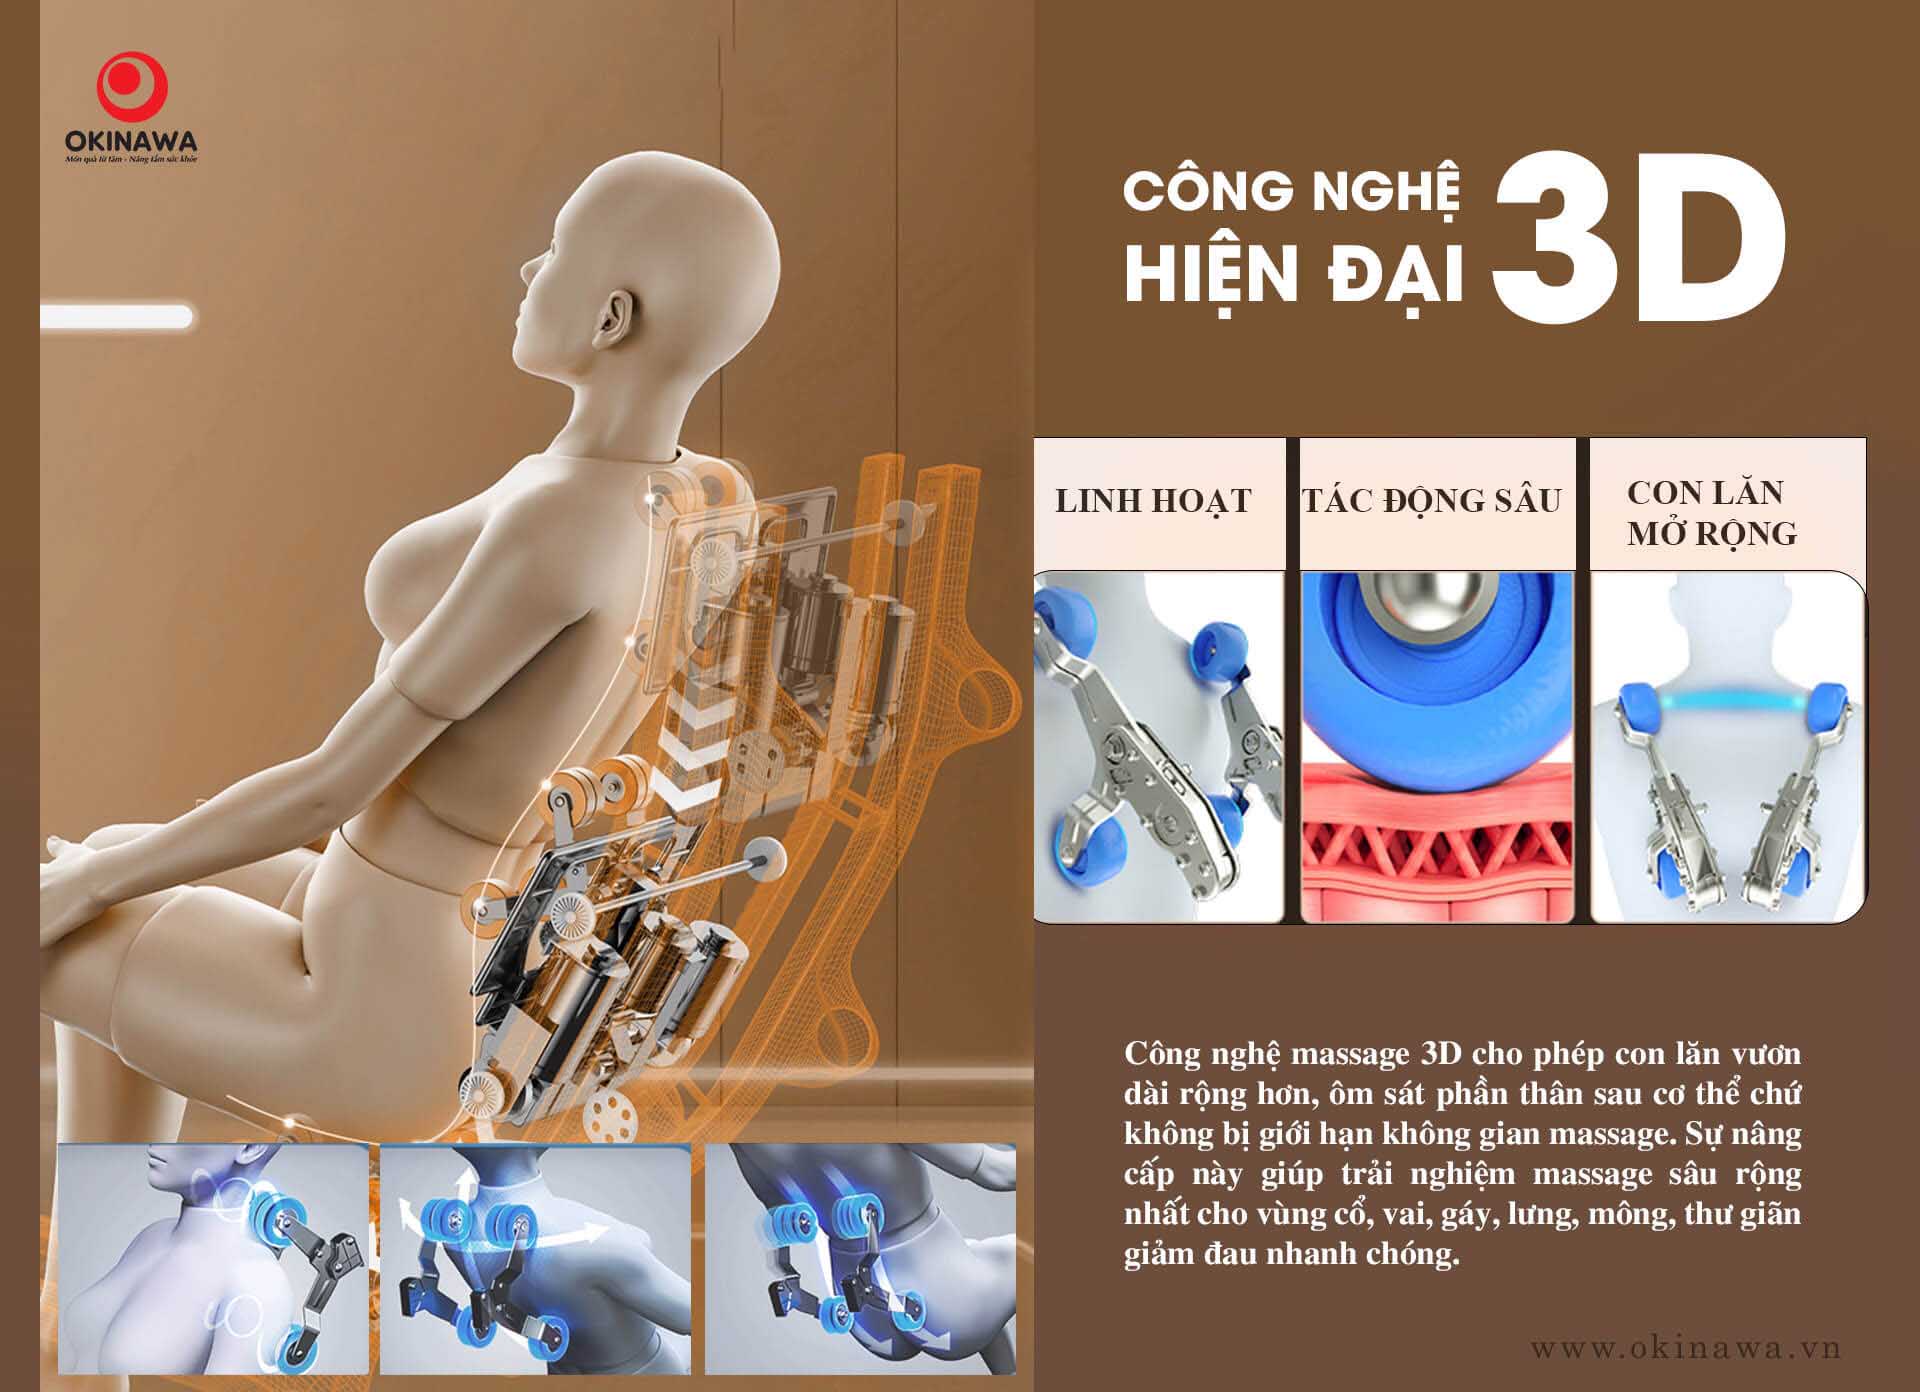 Ghế massage okinawa os 711 công nghệ hiện đại 3D